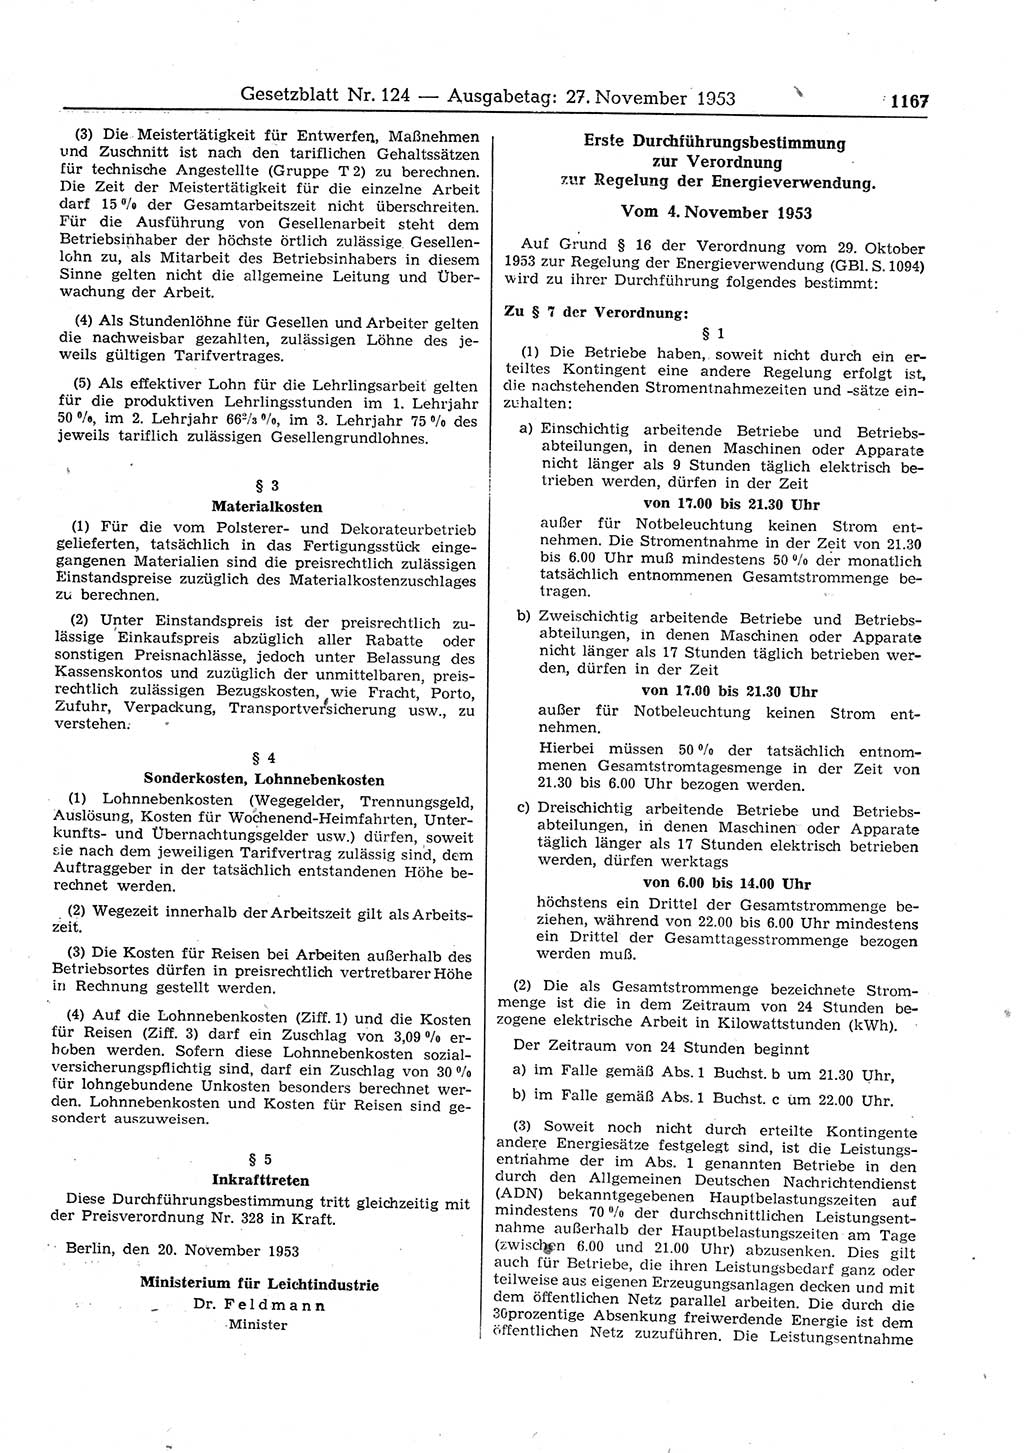 Gesetzblatt (GBl.) der Deutschen Demokratischen Republik (DDR) 1953, Seite 1167 (GBl. DDR 1953, S. 1167)